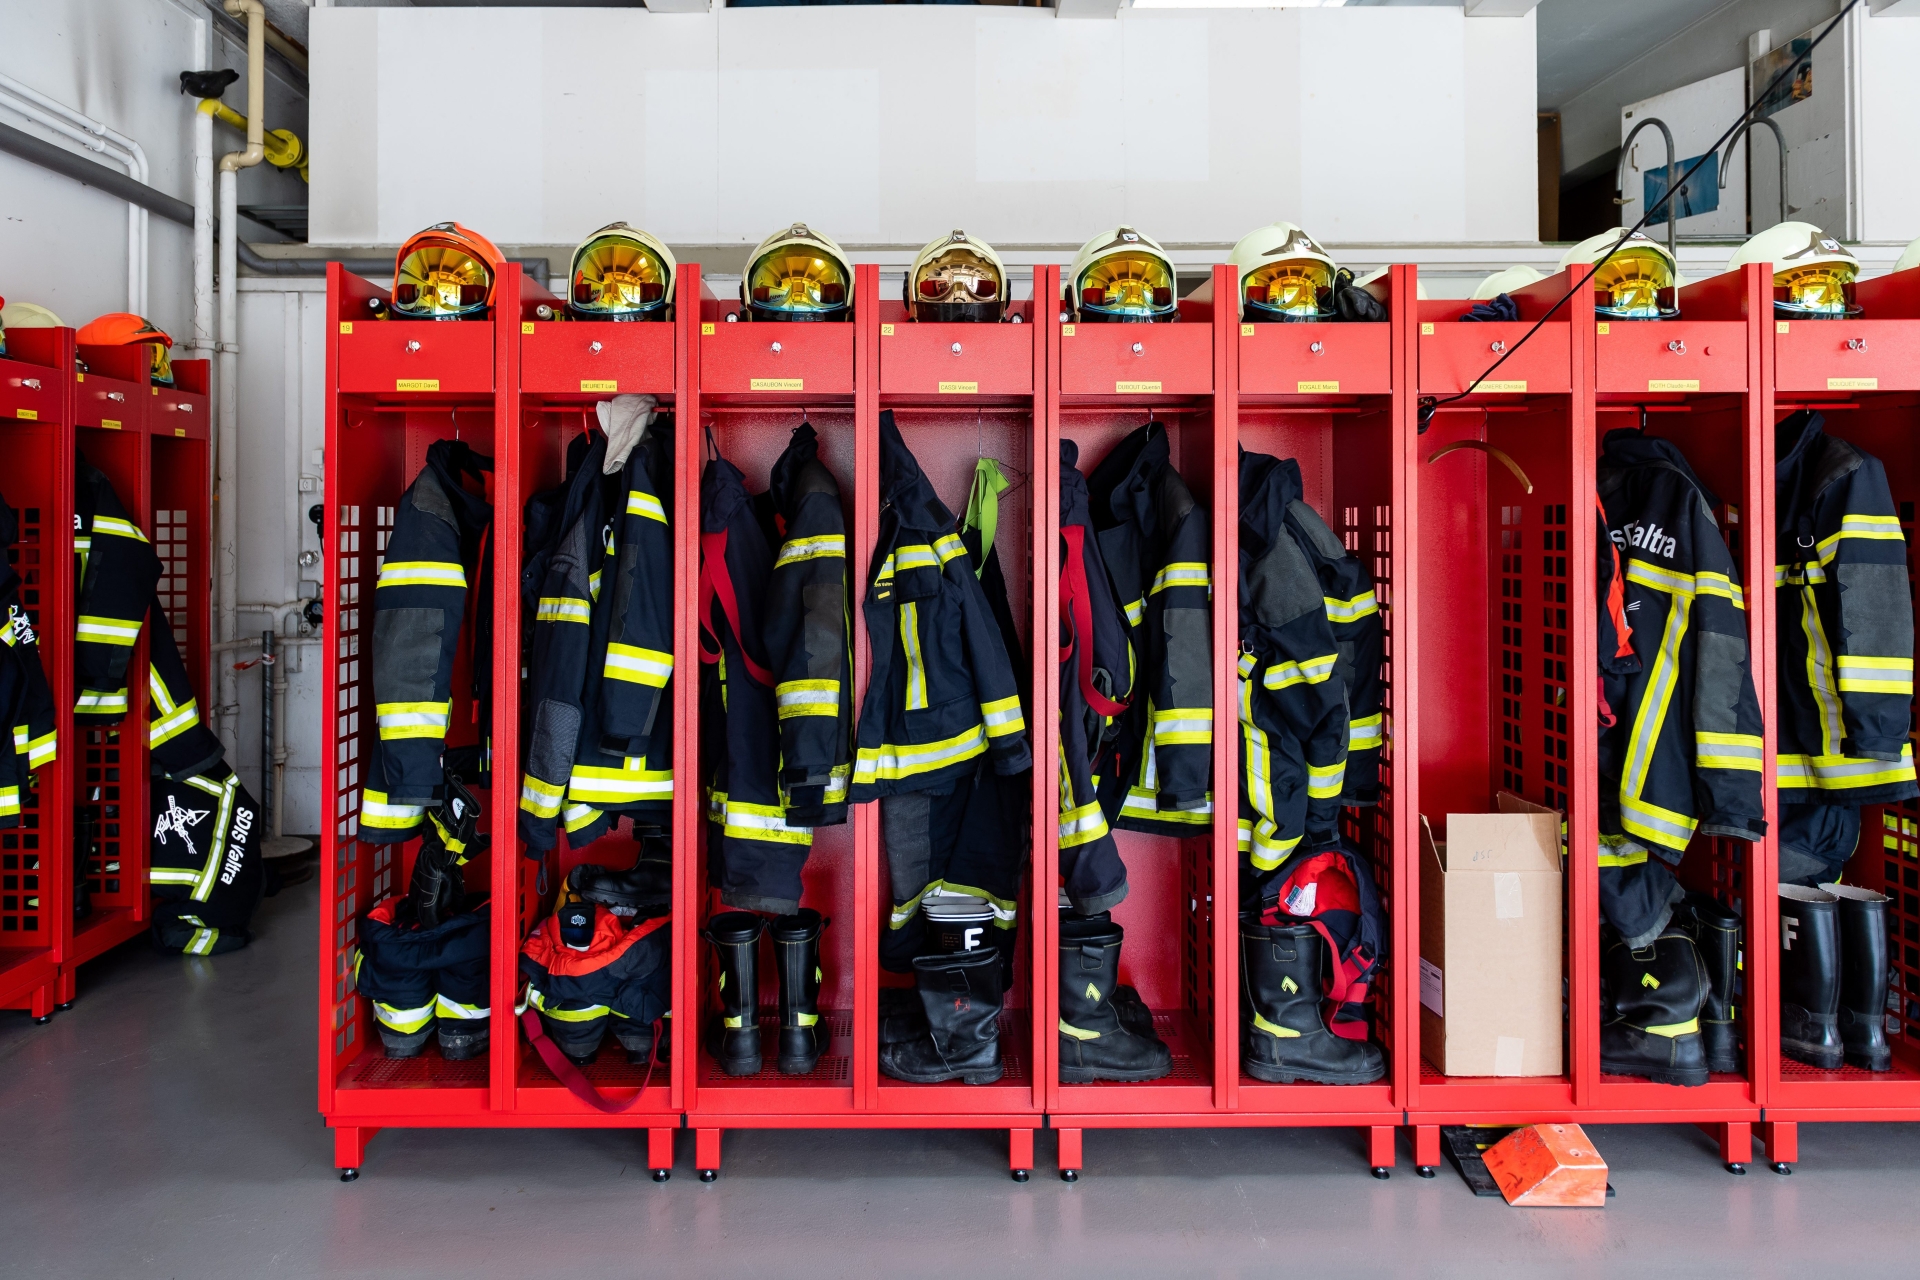 Diverses demandes arrivent ces derniers jours auprès de certaines entreprises neuchâteloises concernant la réalisation de calendrier 2022 des pompiers.